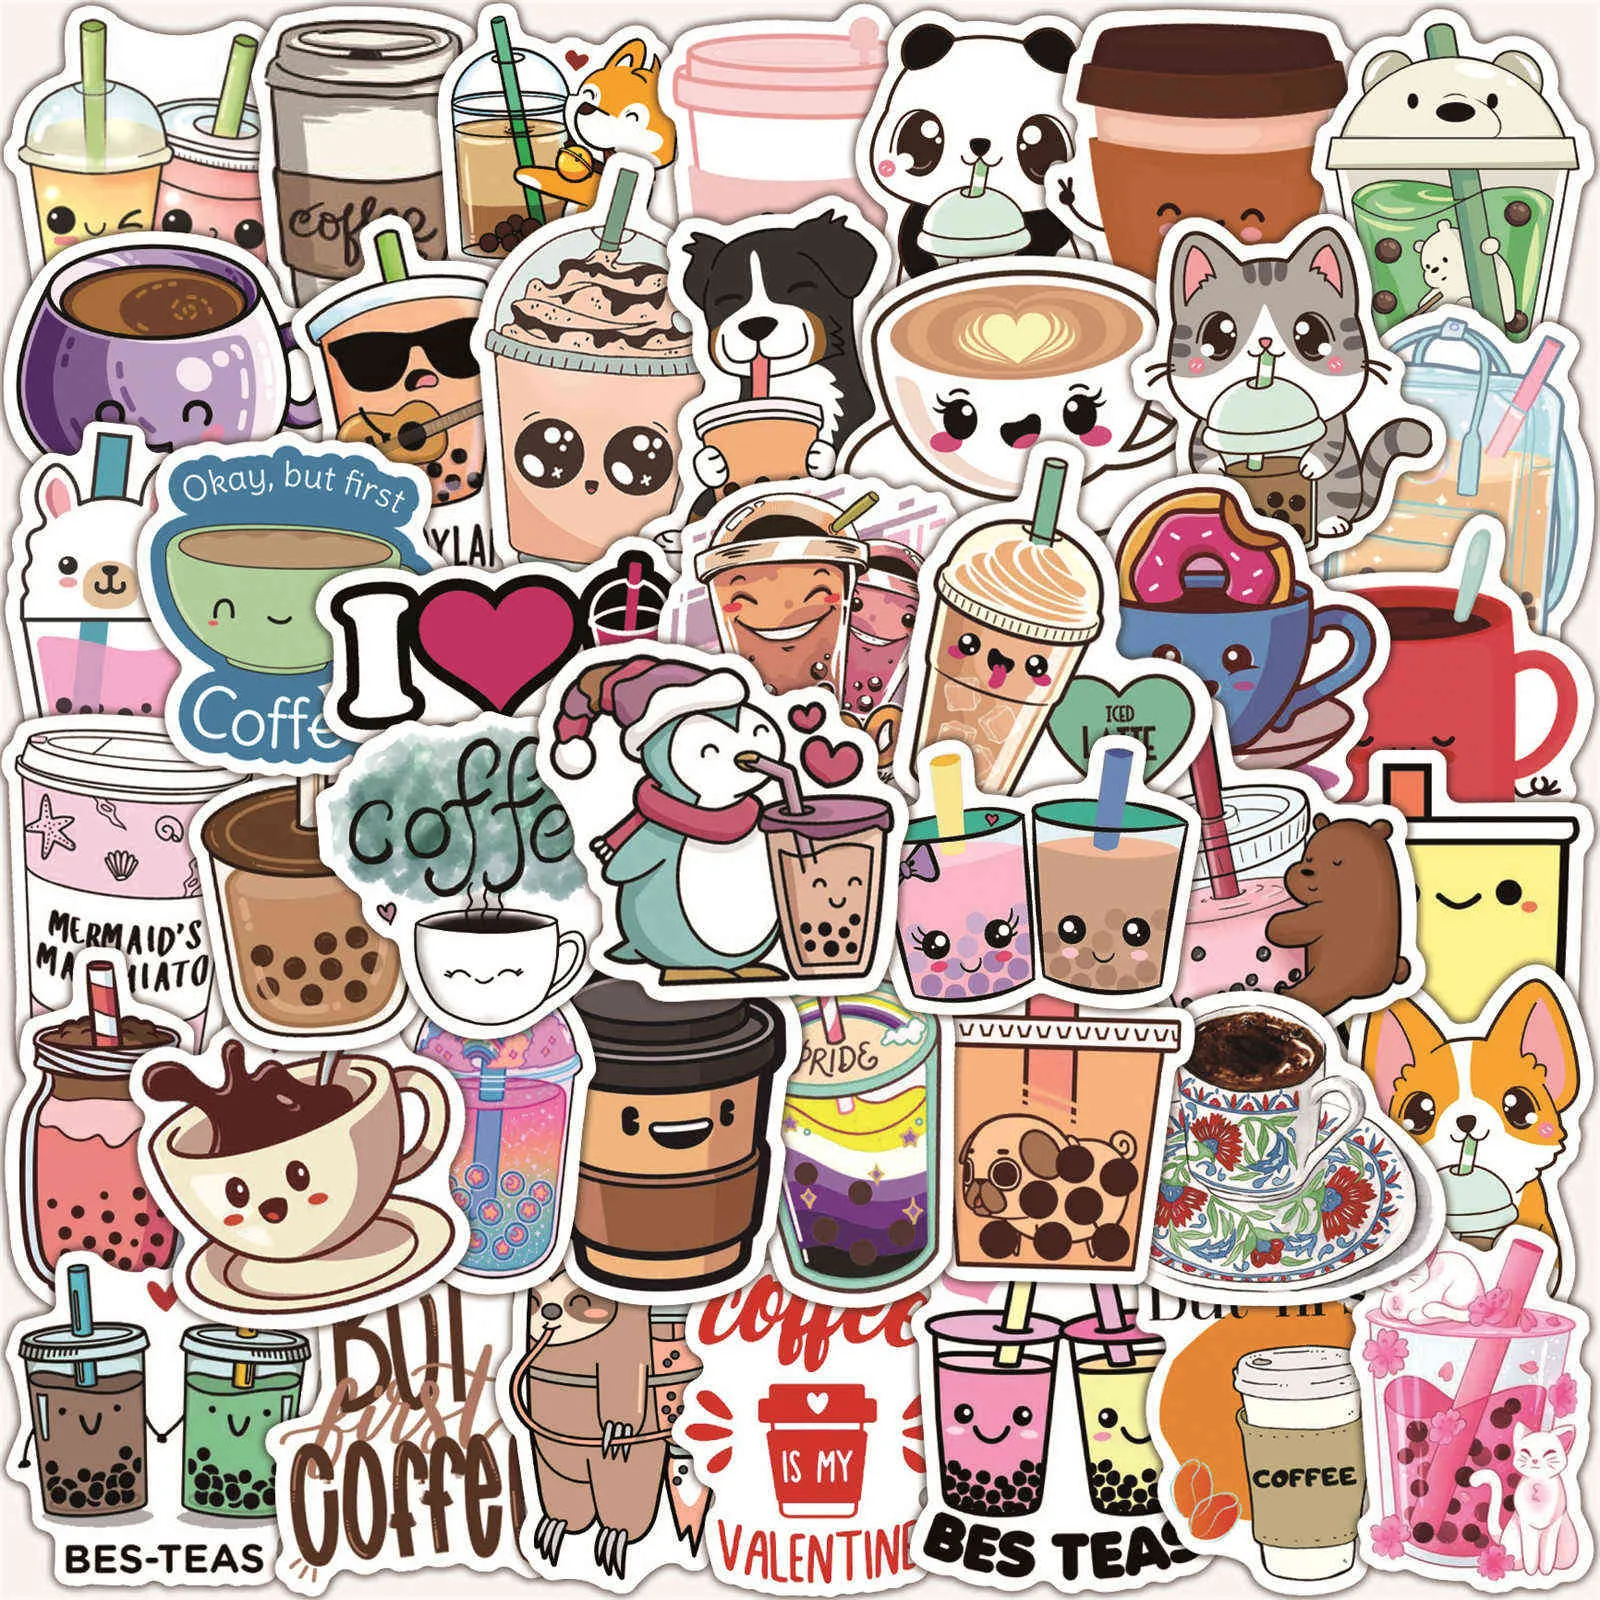 100 stks Cute Cartoon Pearl Pearl Milk Tea Stickers Pack voor Meisje Boba Bubble Teas Decal Sticker to DIY Bagage Laptop Gitaar Auto